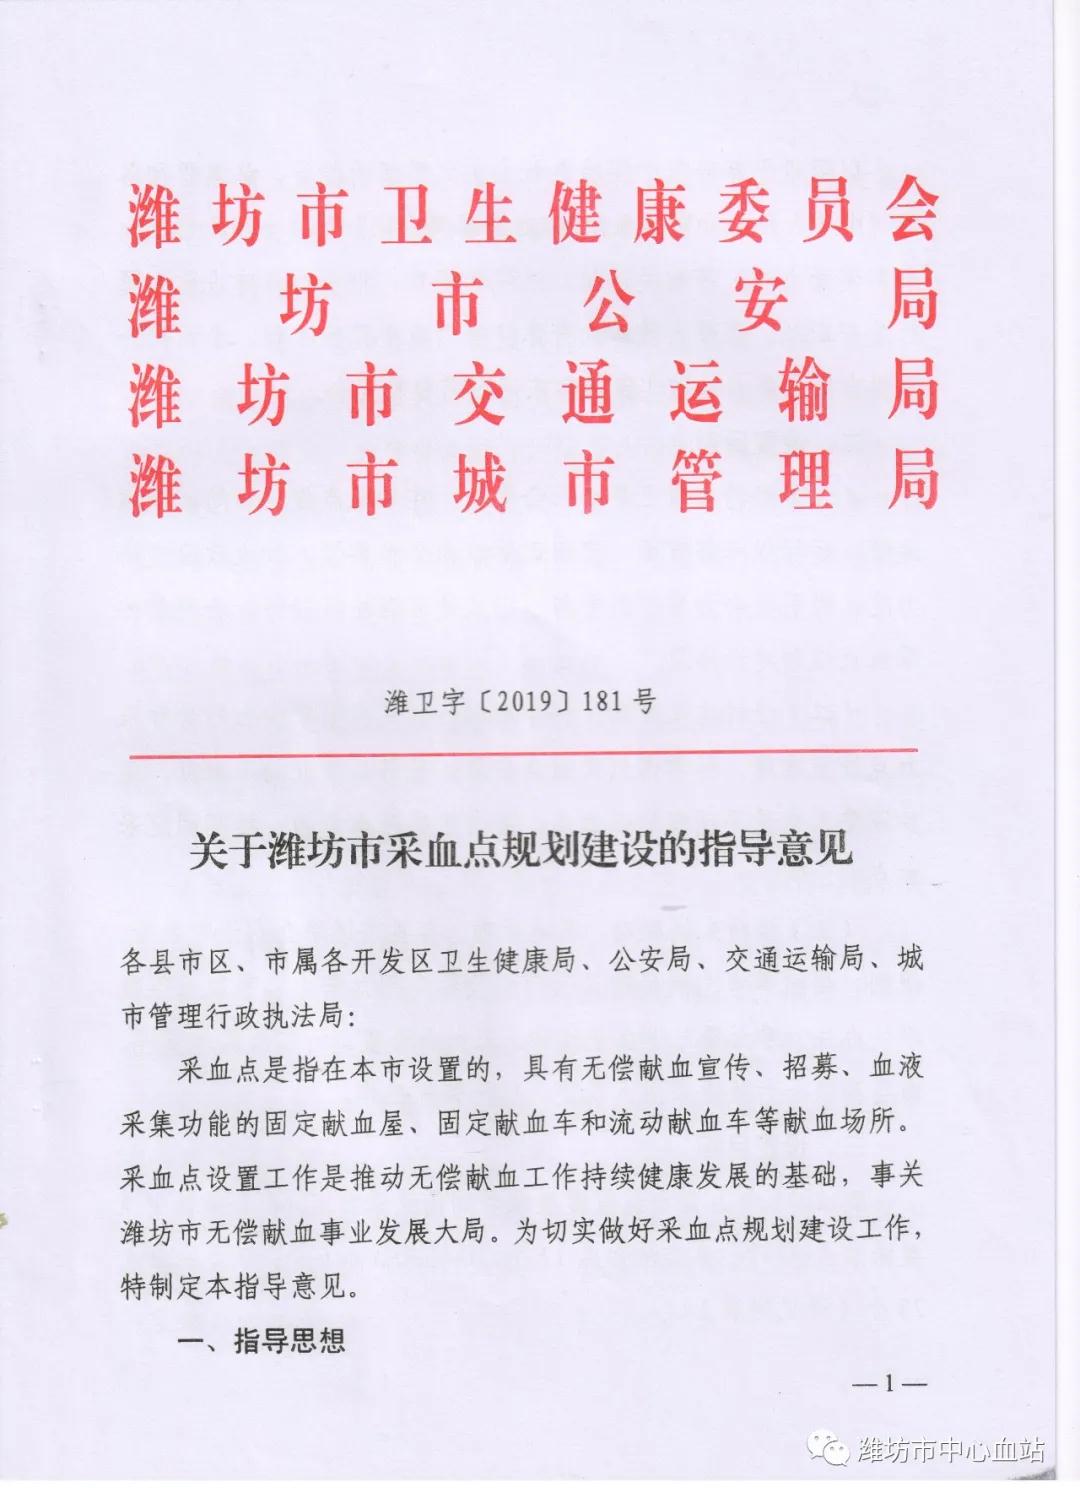 潍坊市中心血站站长在全省血站站长会议上作无偿献血工作典型发言